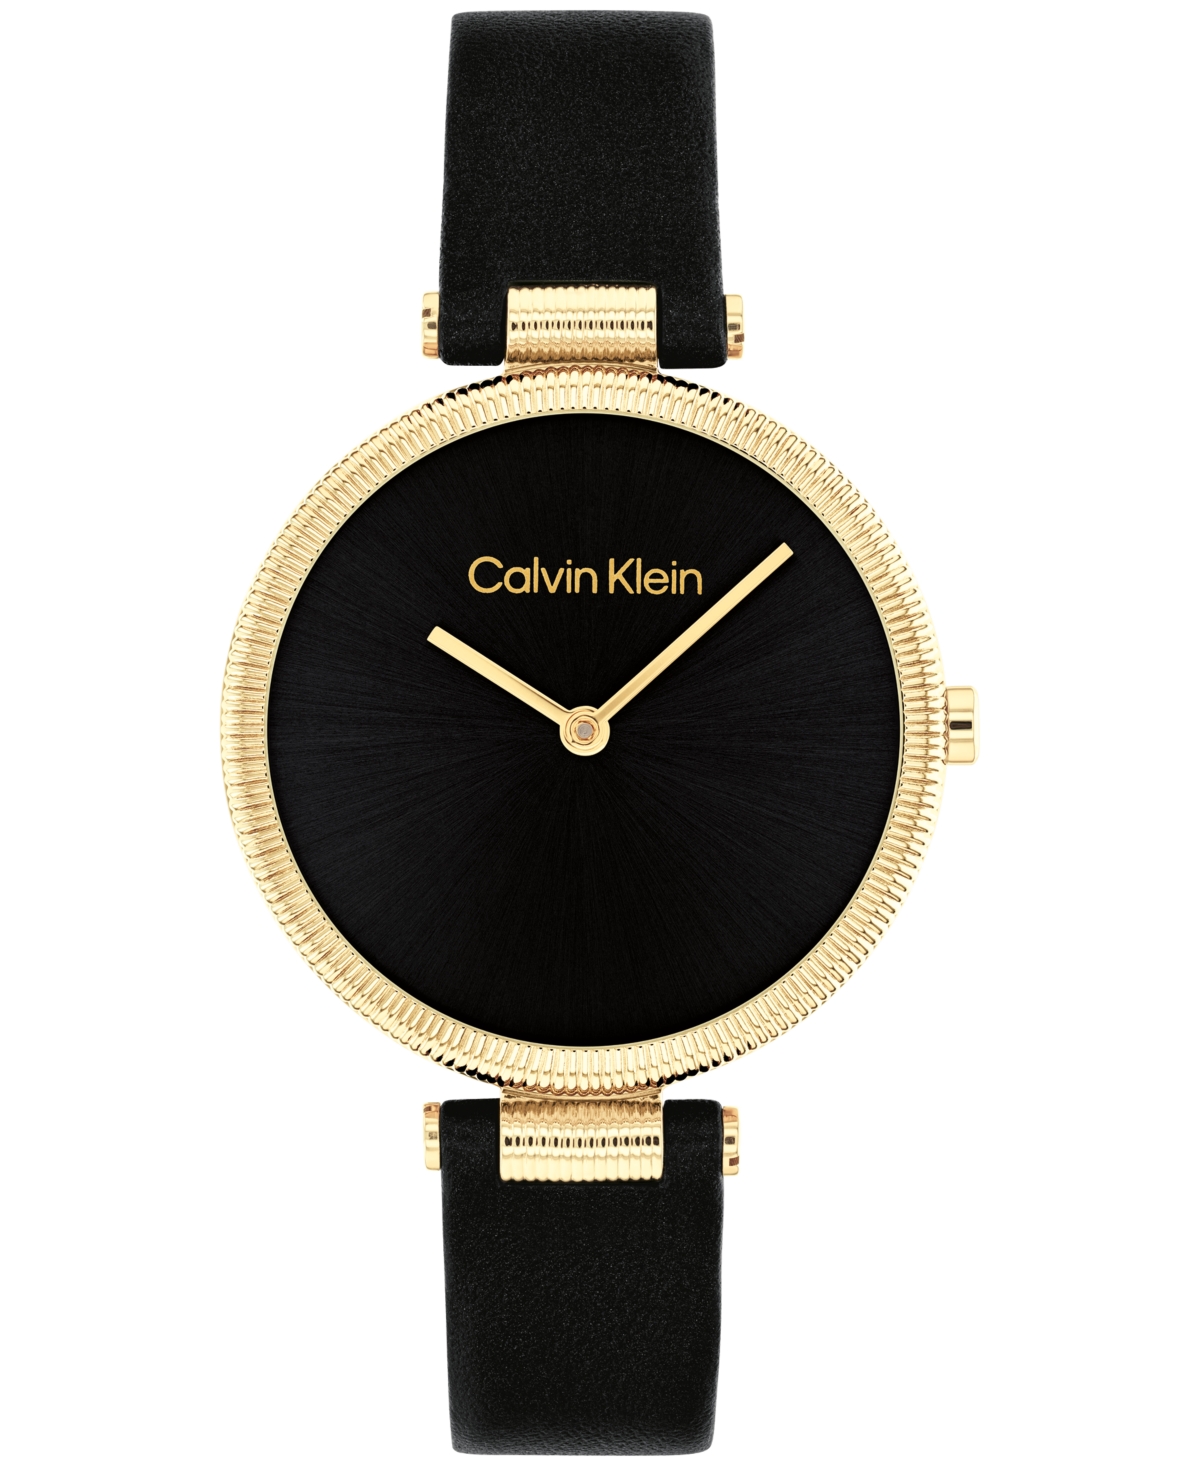 Calvin Klein Women's Gleam Black Leather Strap Watch 32mm